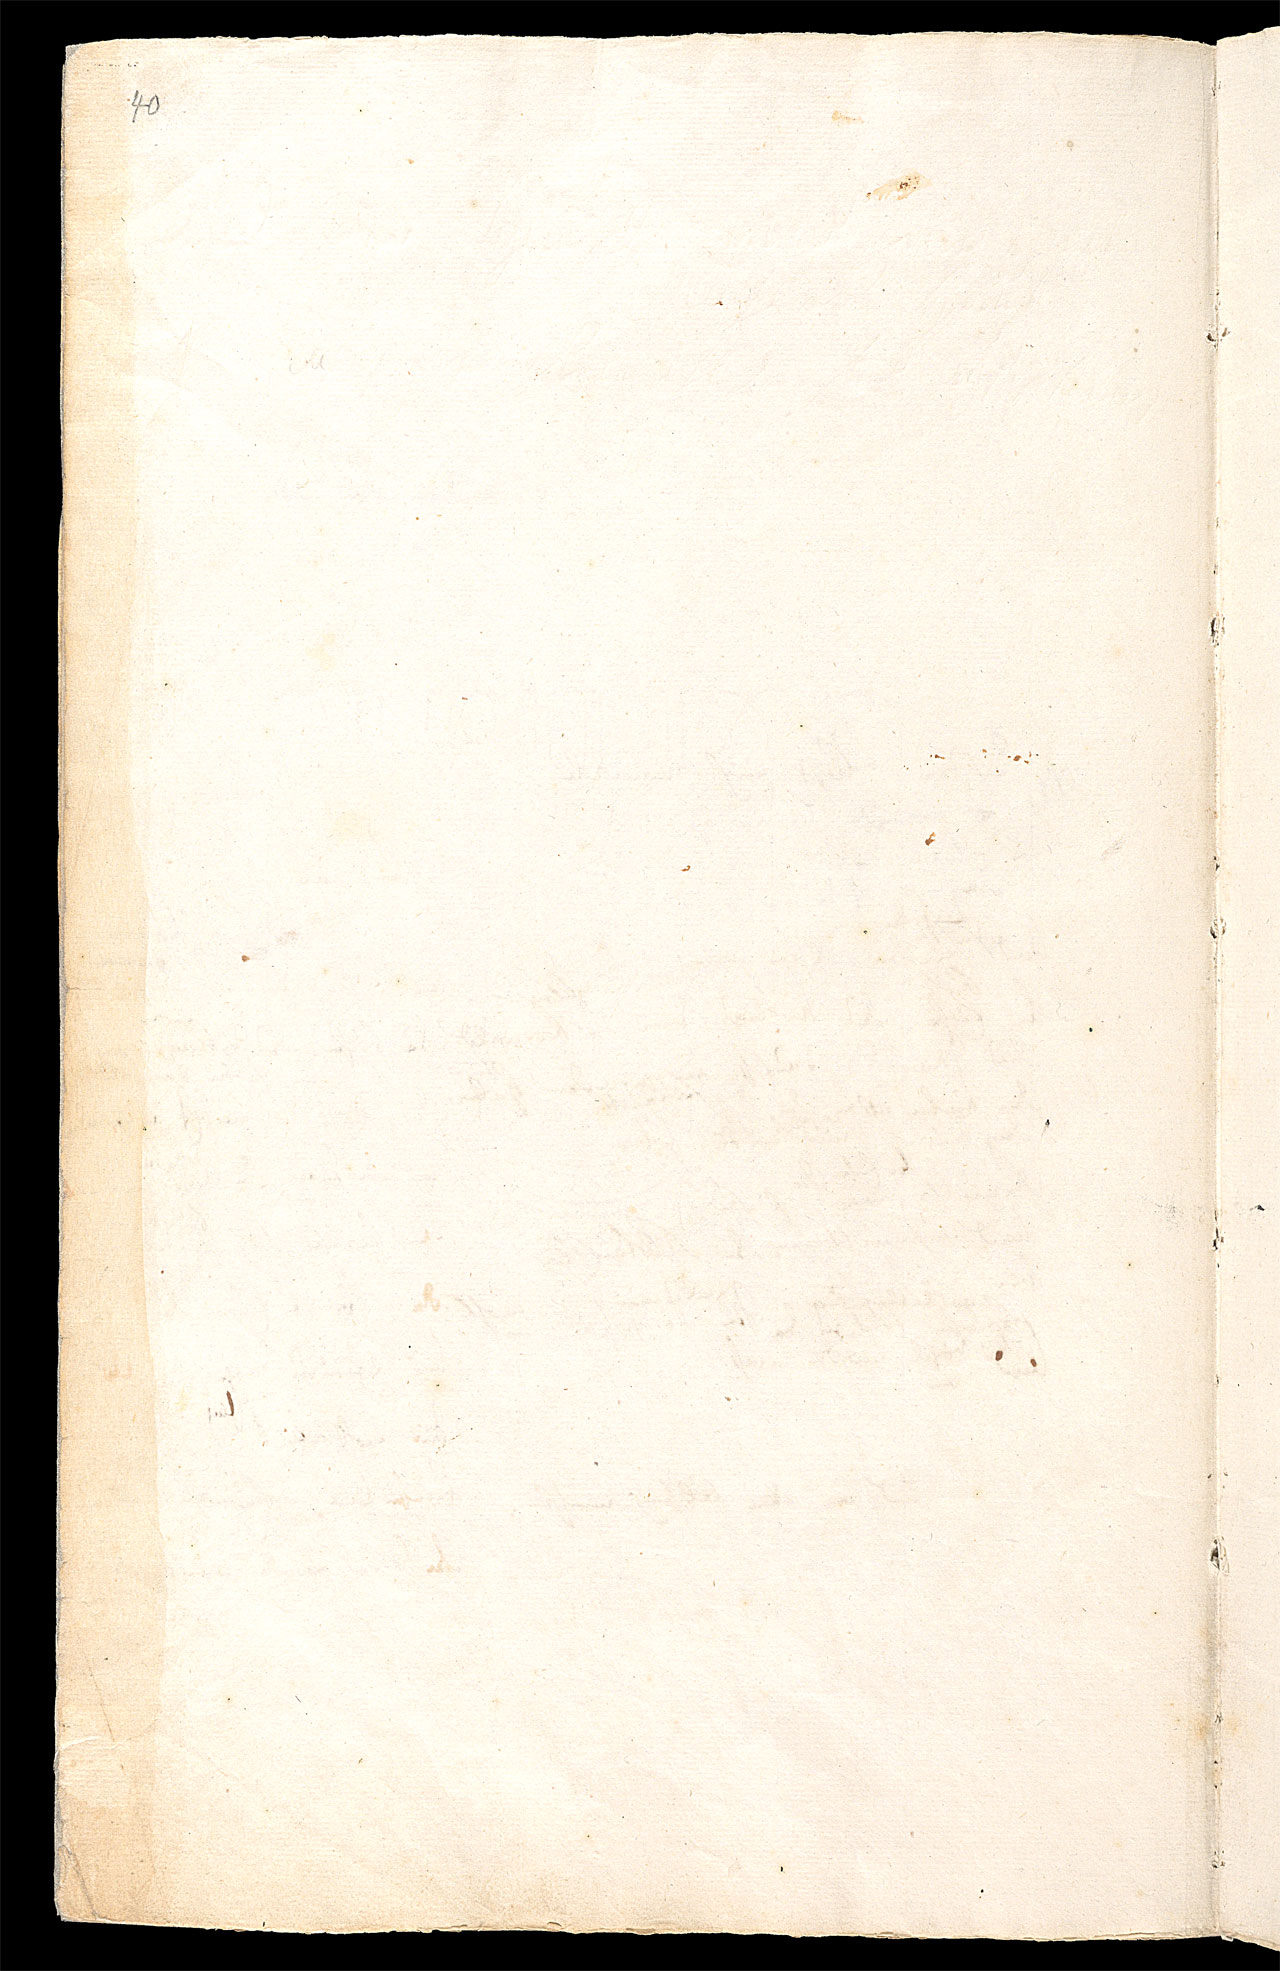 Friedrich Hölderlin, Homburger Folioheft, Seite 40, Und der Himmel wird wie eines Mahlers Haus…, Handschrift